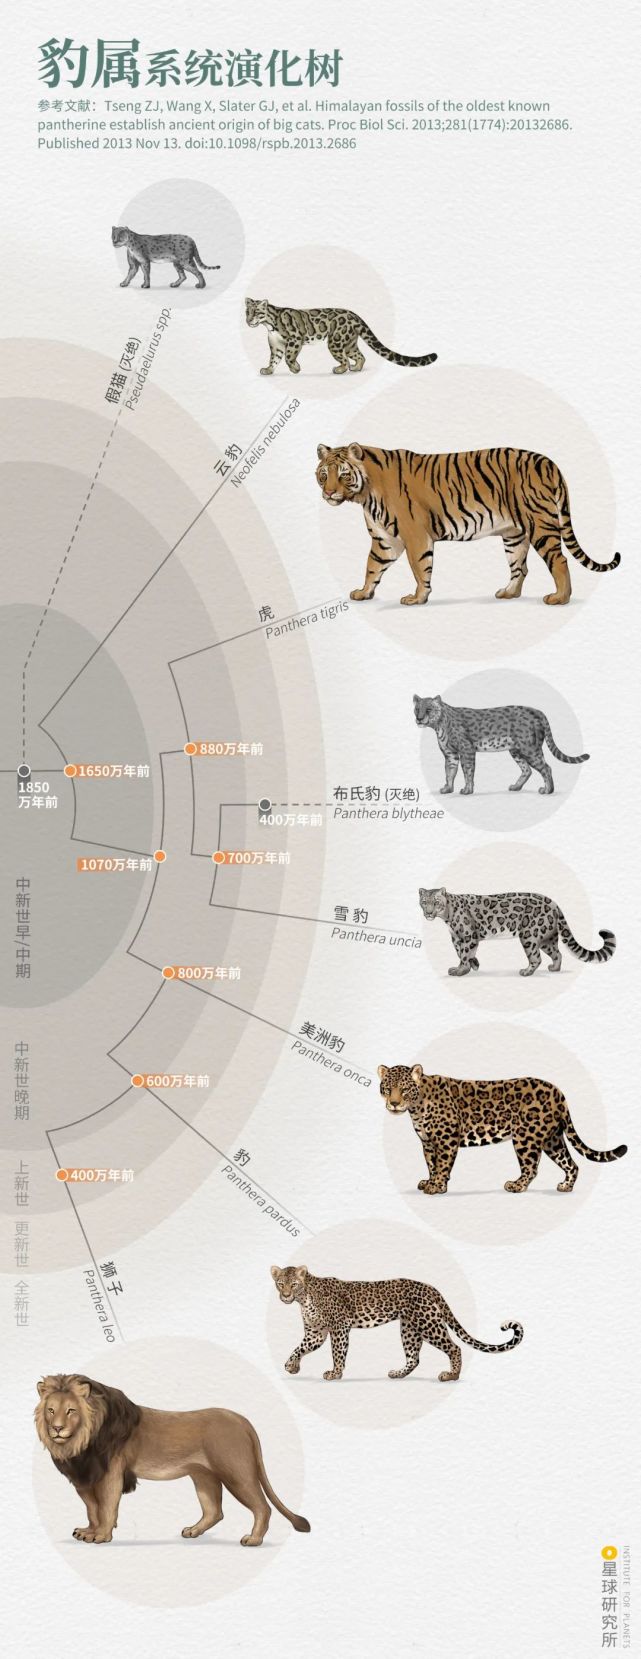 老虎结构示意图图片